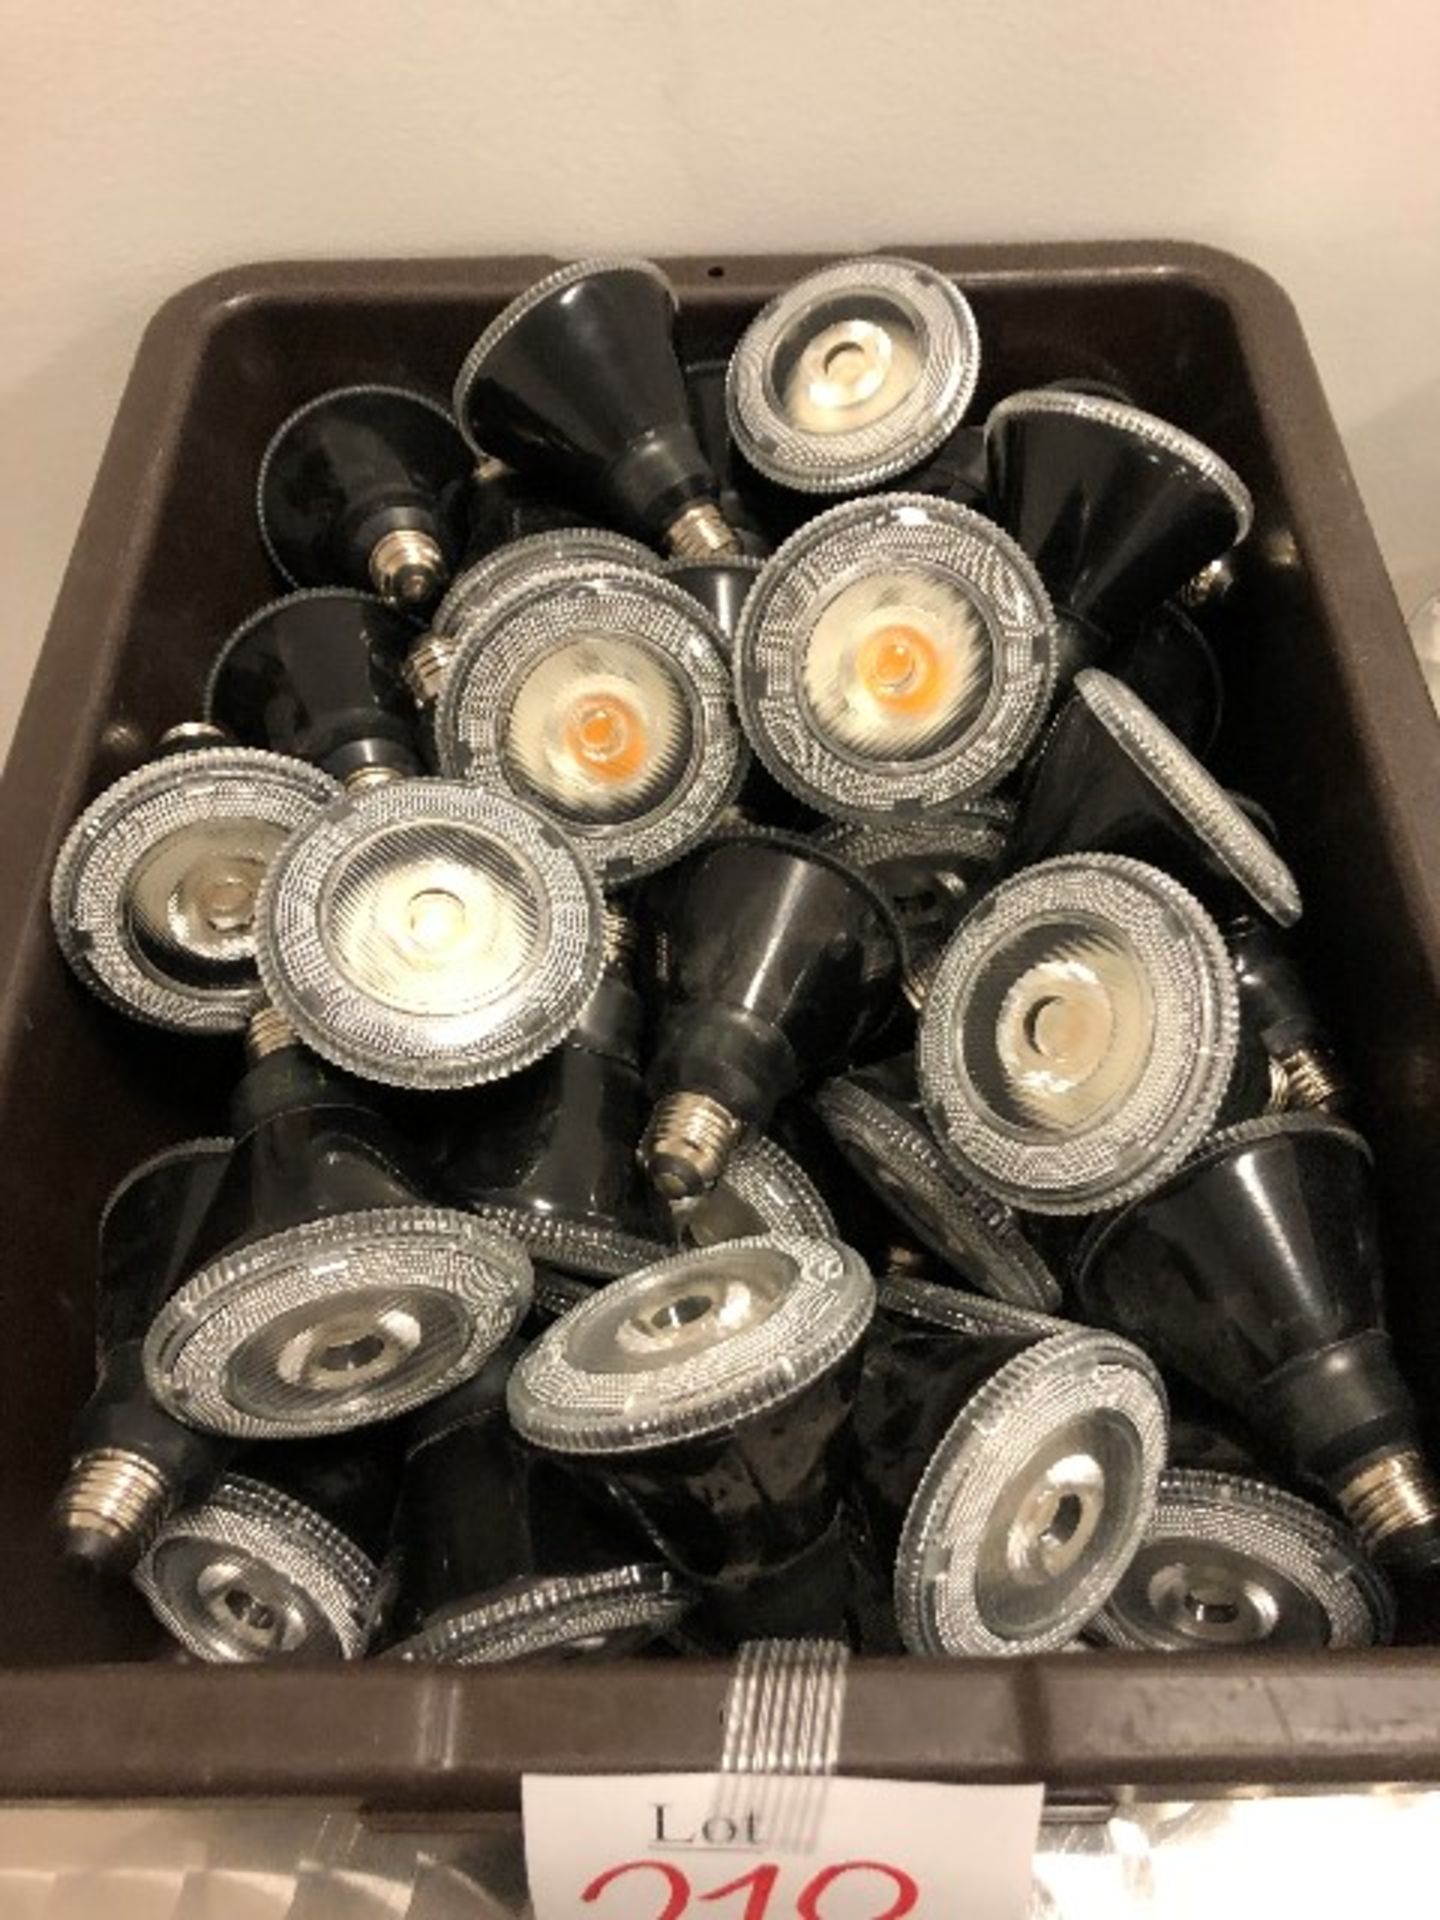 PAR 30 LED lamp bulbs, 50 pcs (Lot)